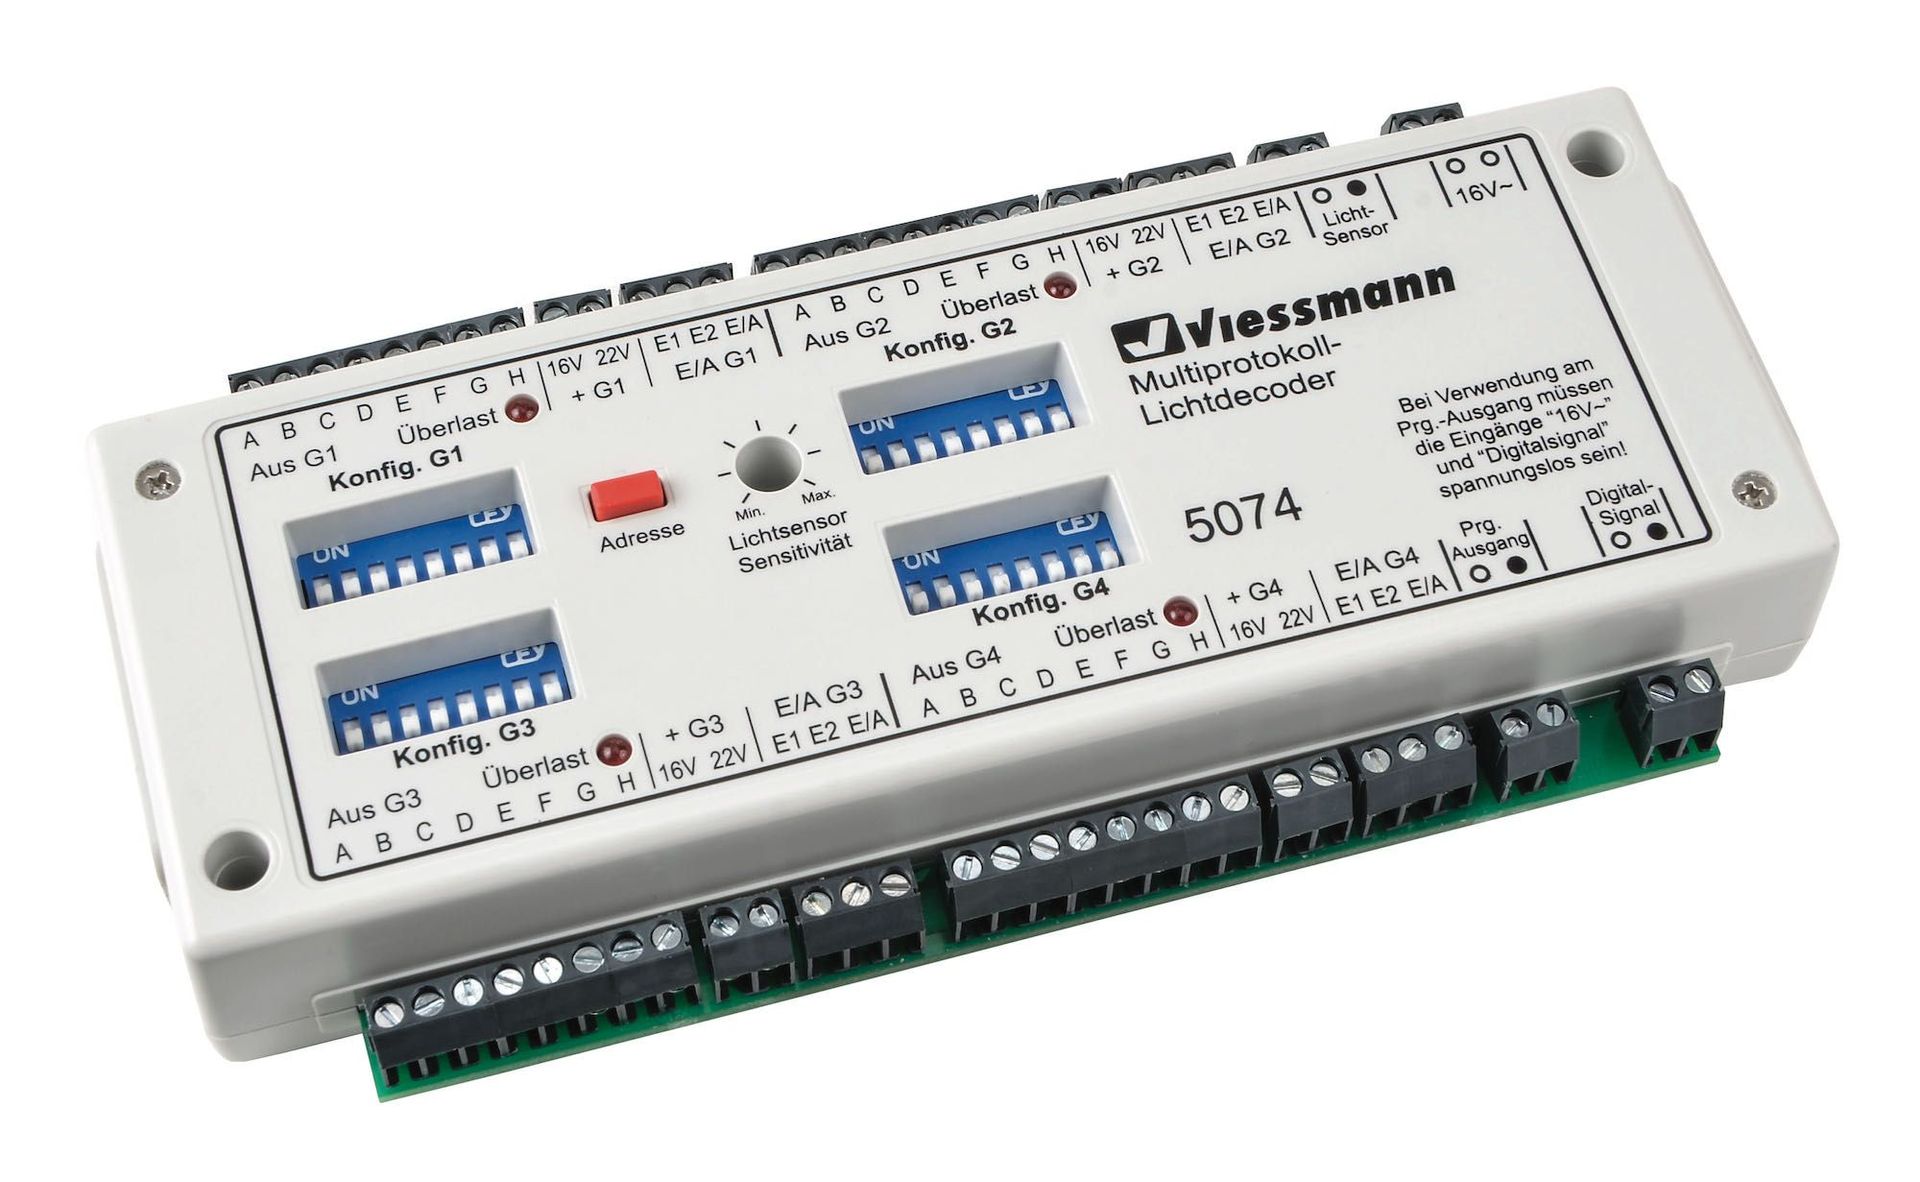 Viessmann 5074 - Multiprotokoll-Lichtdecoder